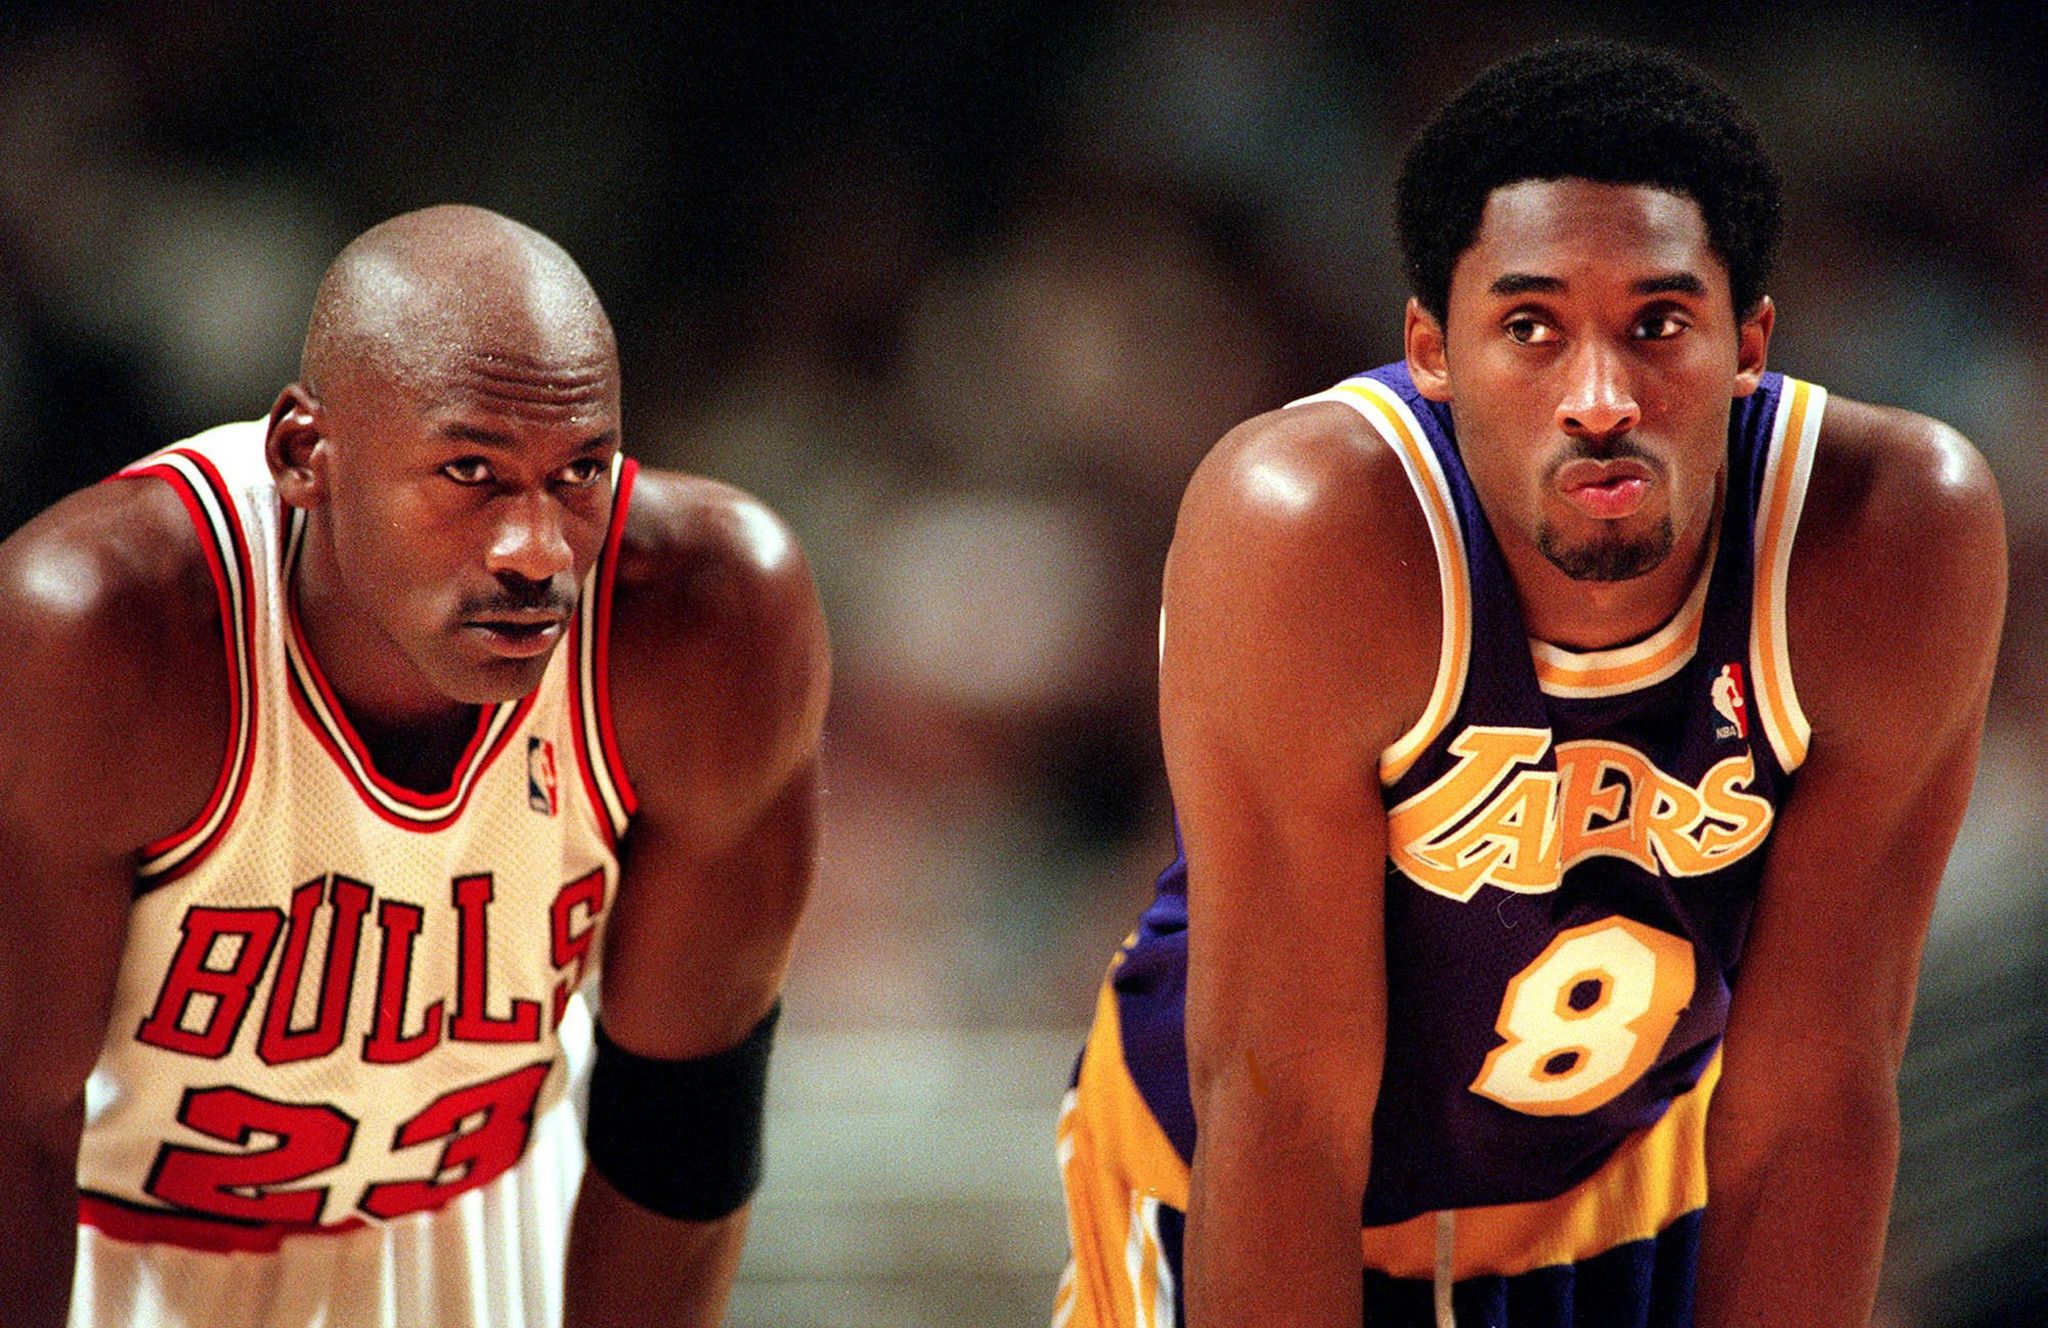 Last Dance' Episode 5: Michael Jordan meets Kobe Bryant